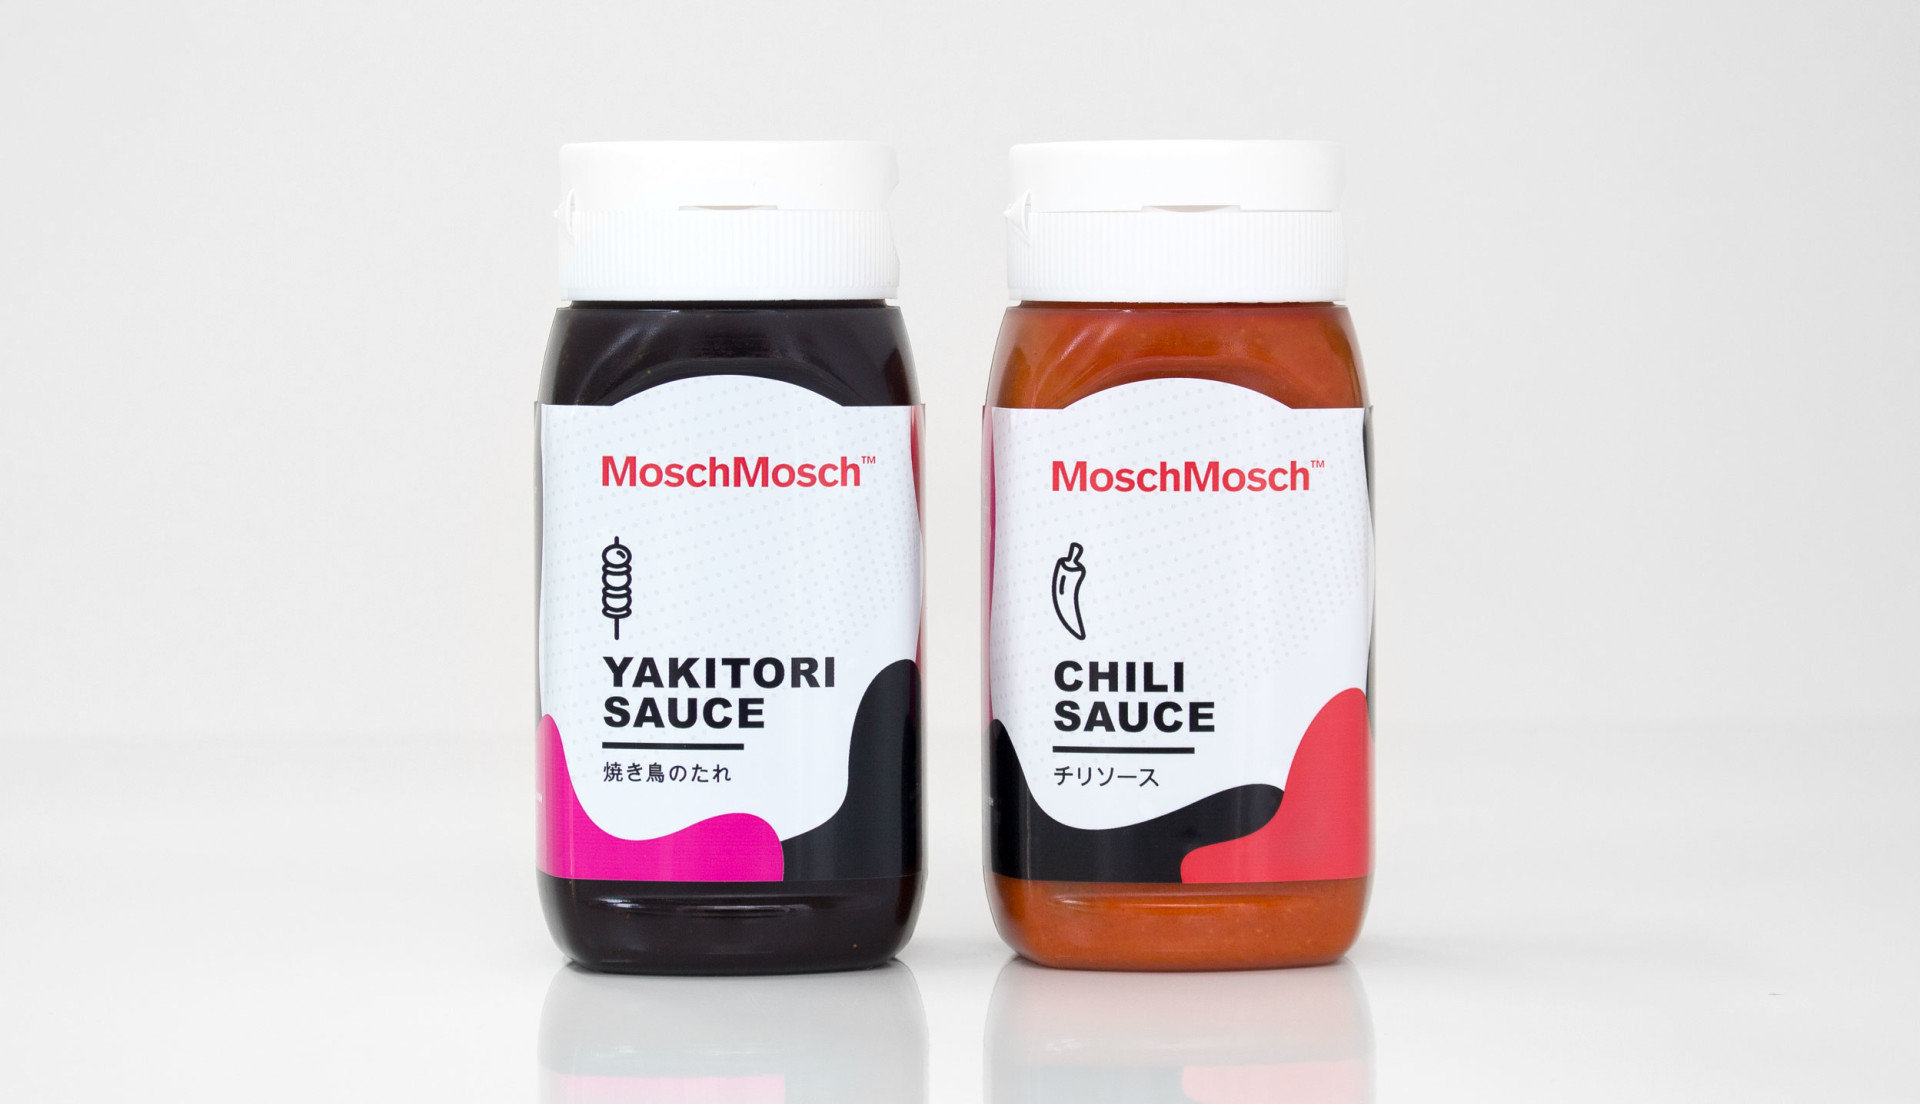 MoschMosch – Packaging ()